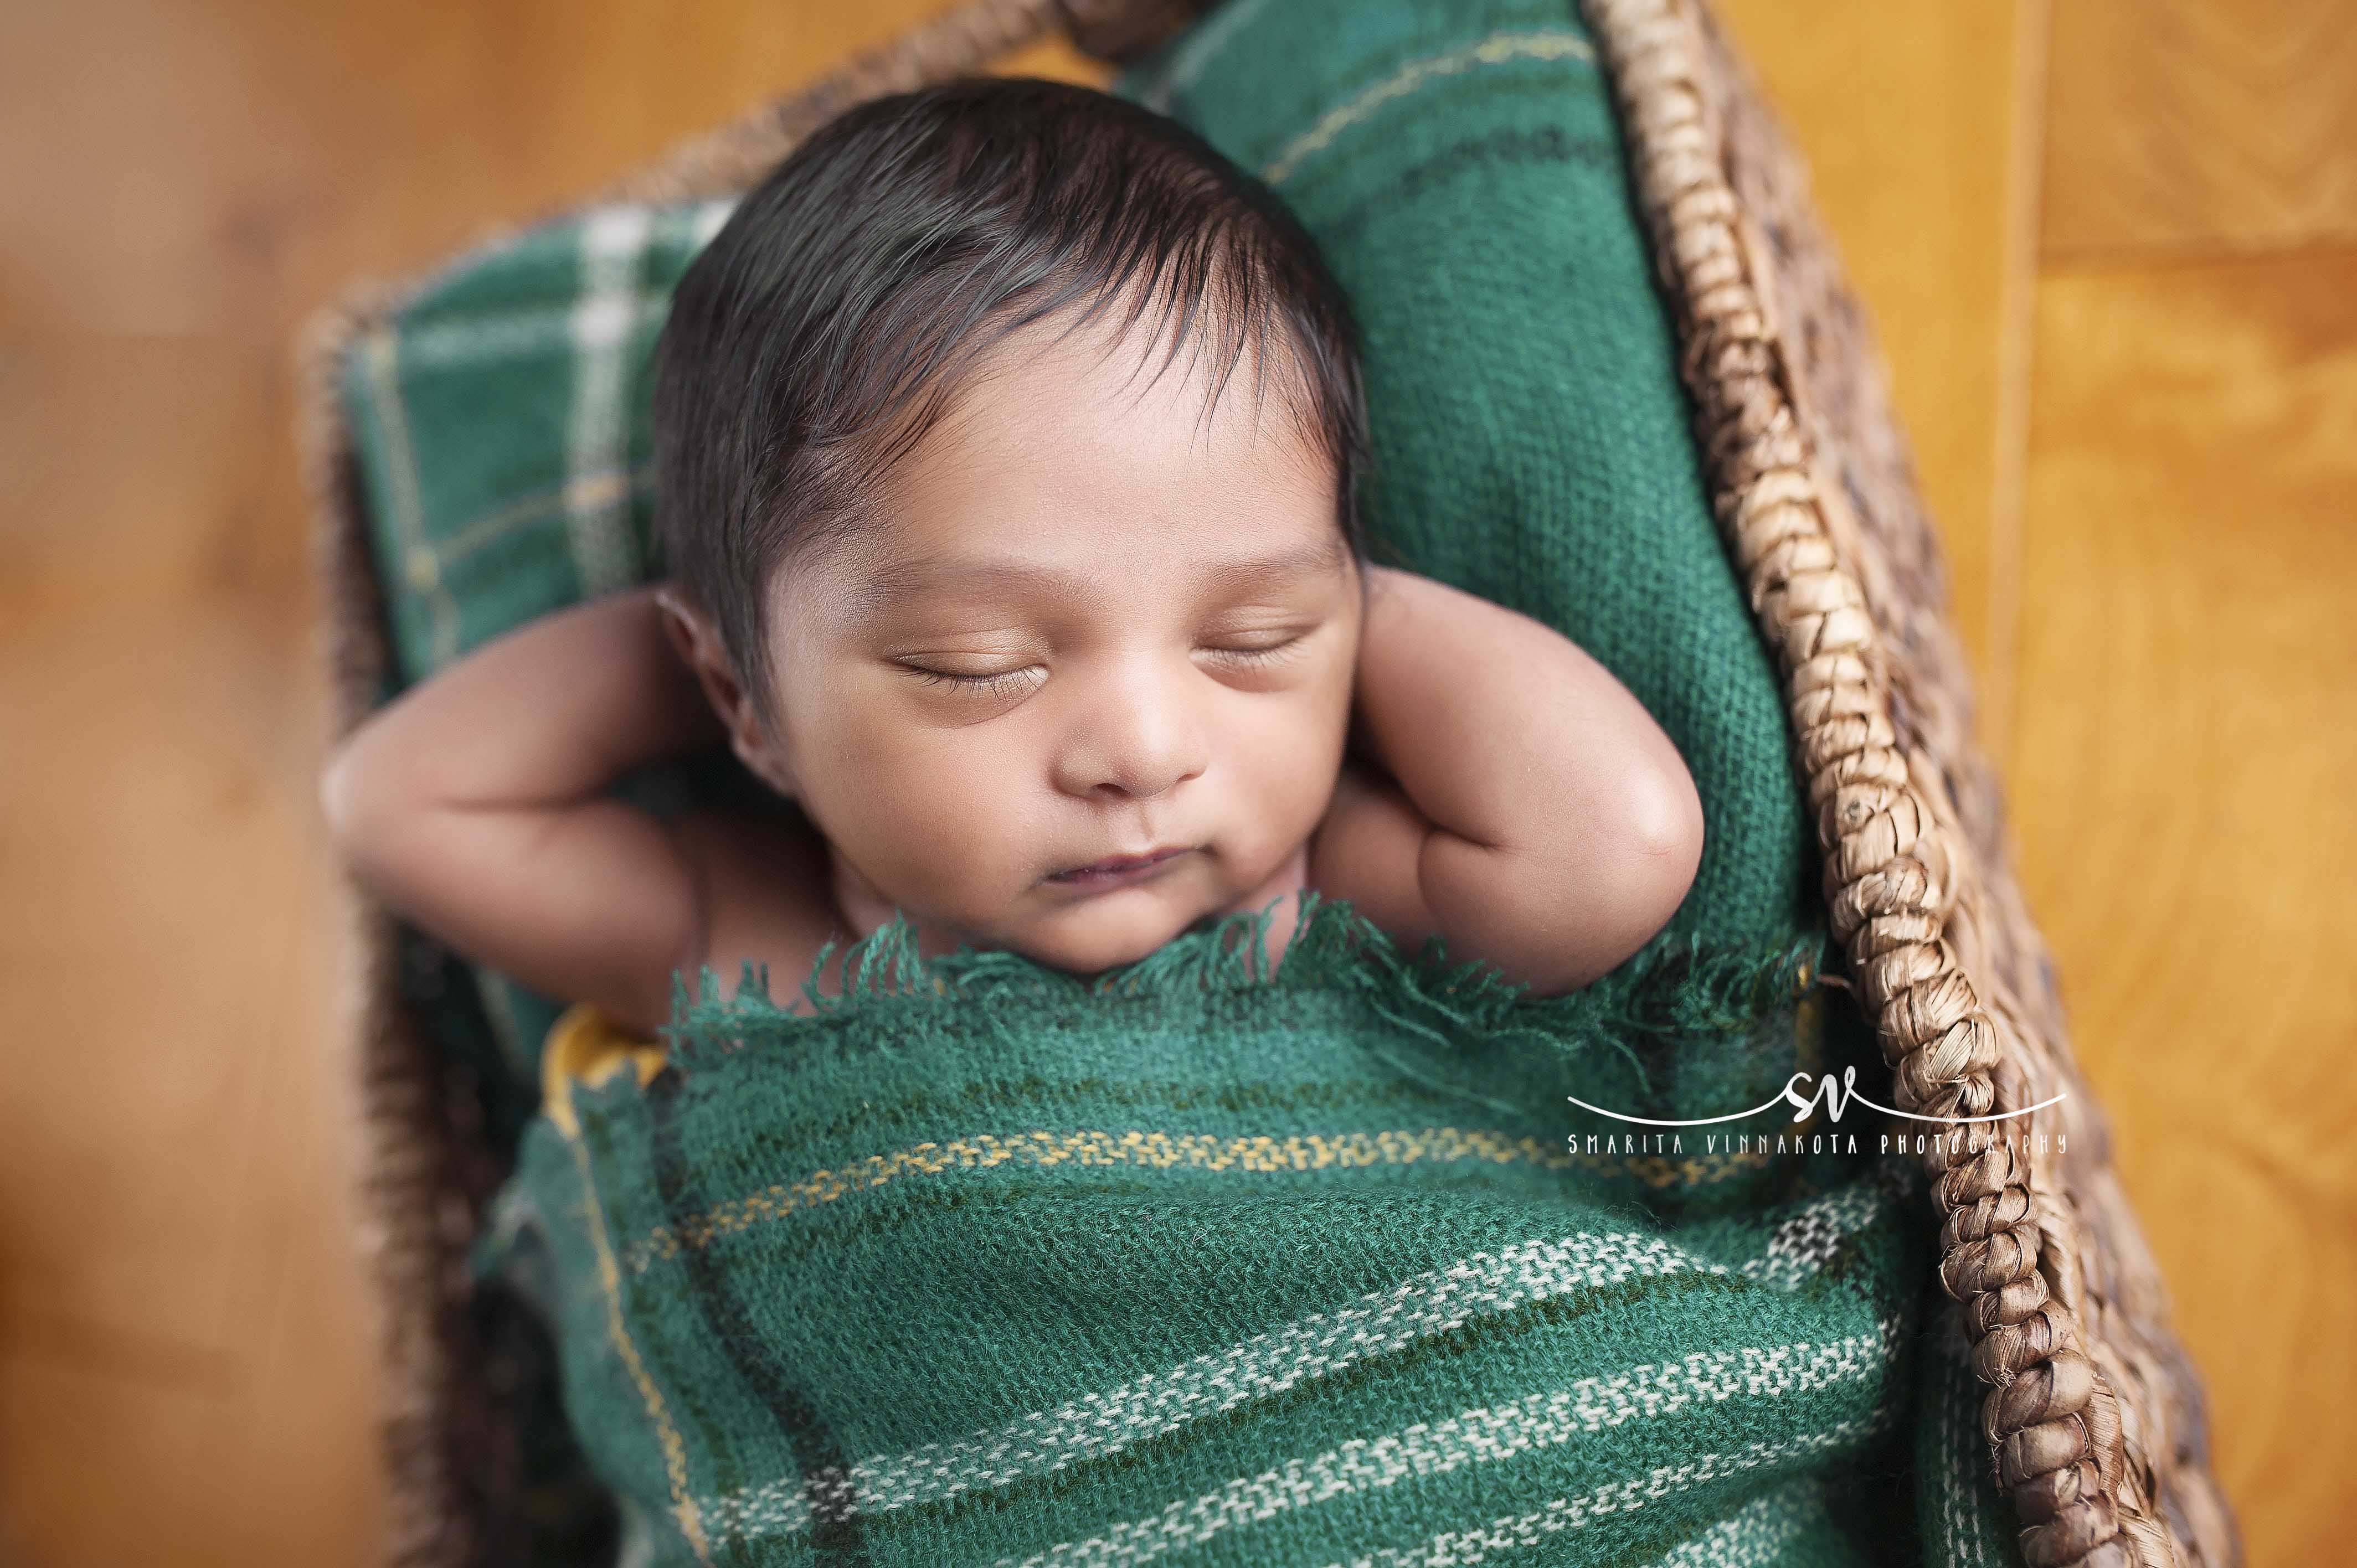 Smarita-Vinnakota-Photography_Newborn-4-1